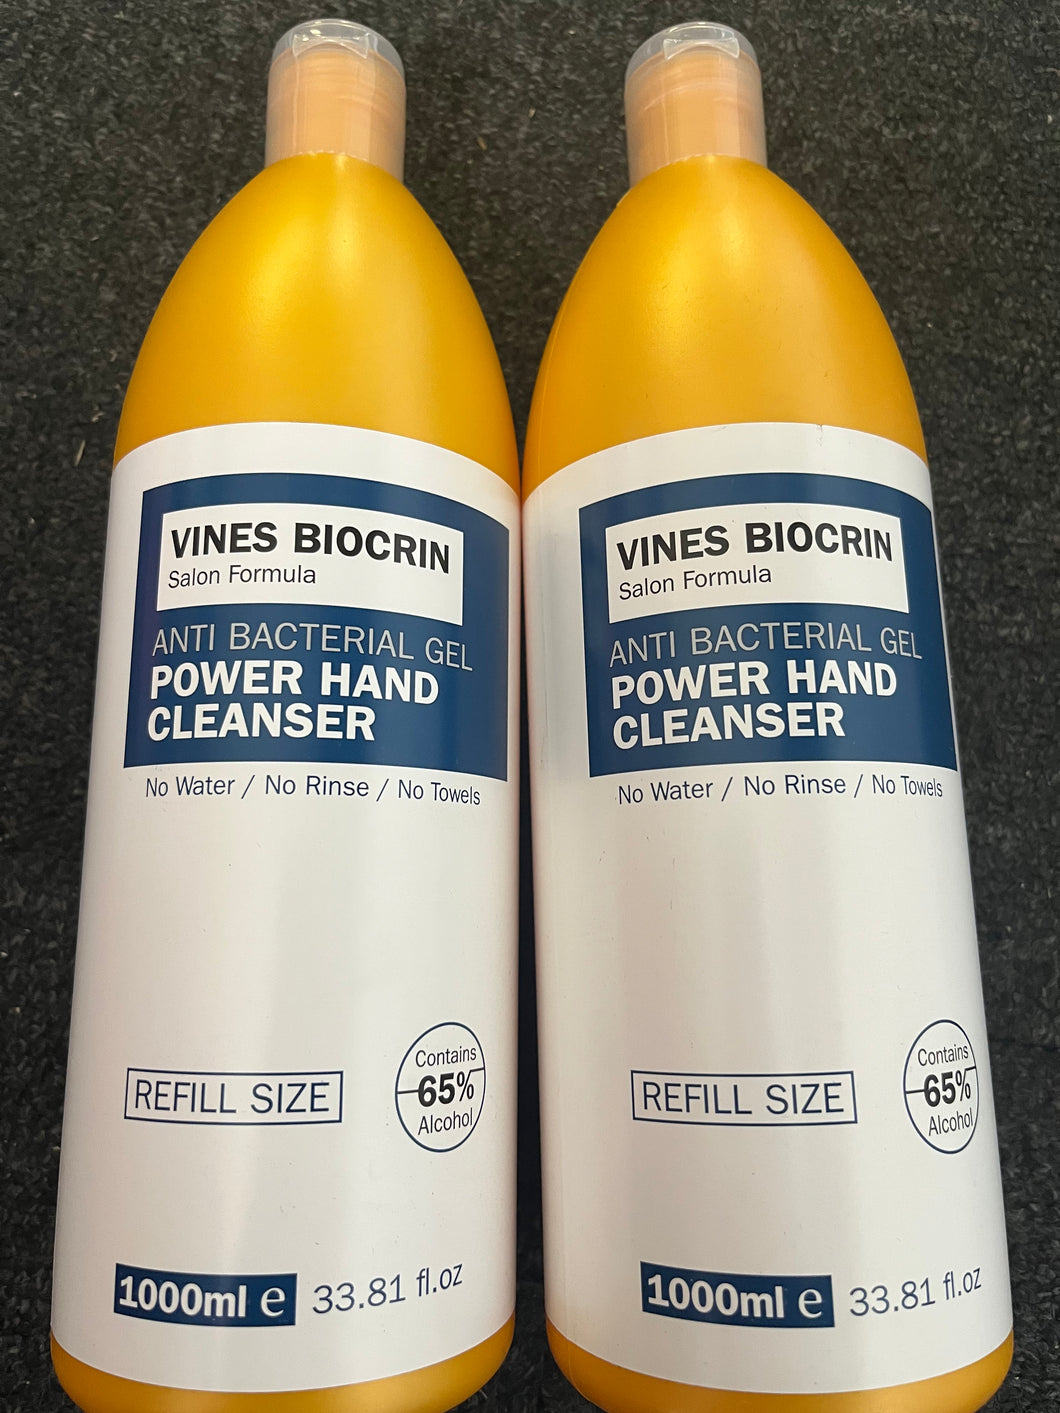 vines biocrin anti bacterial gel power hand cleanser 1000ml - (Bundle of 2 bottles)